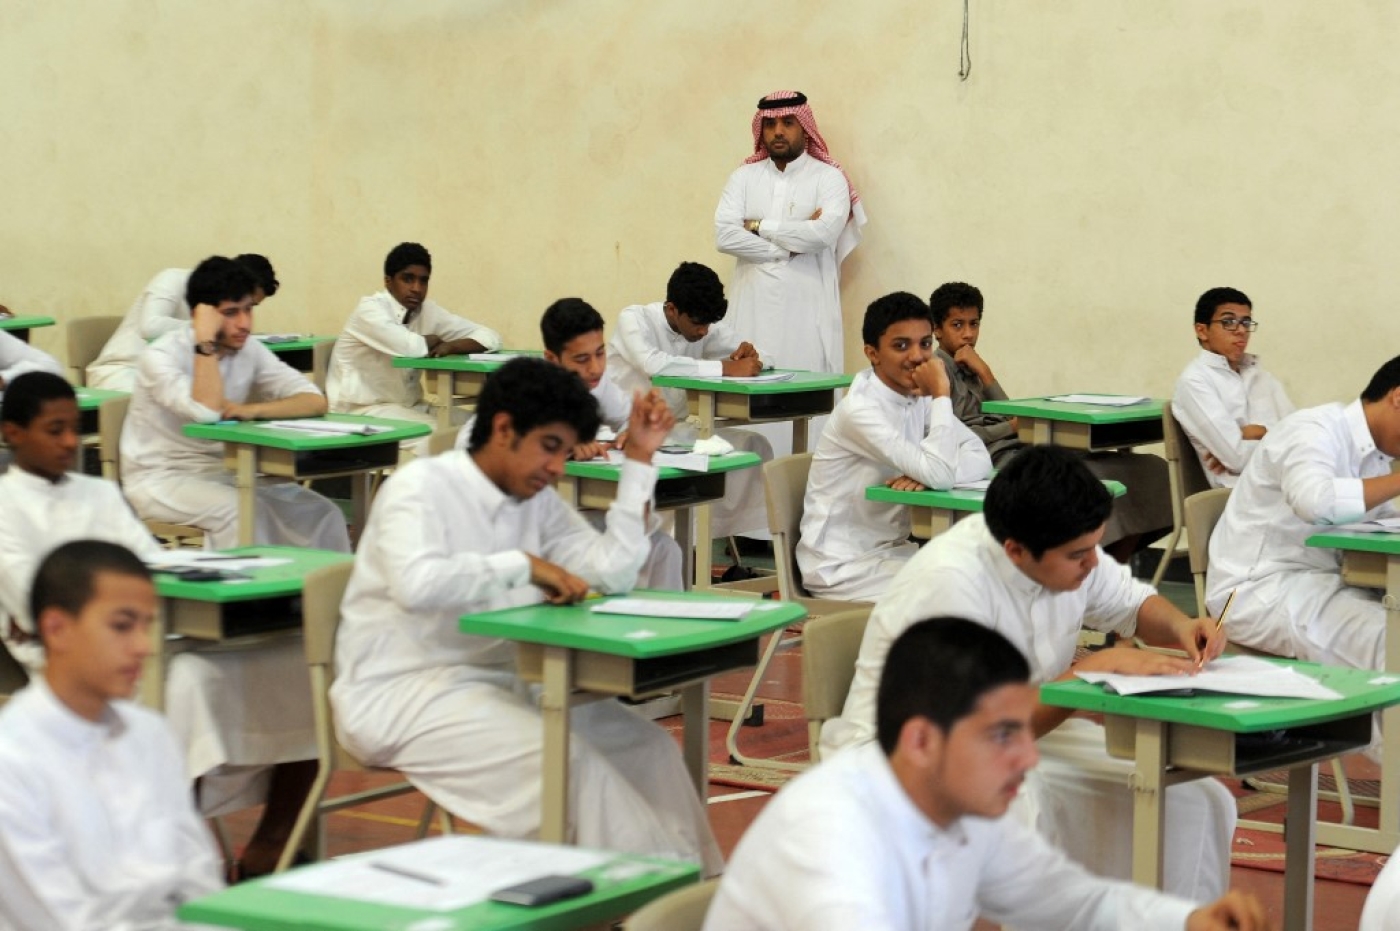 Des étudiants saoudiens dans la ville portuaire de Djeddah, sur la mer Rouge (AFP/Amer Salem)